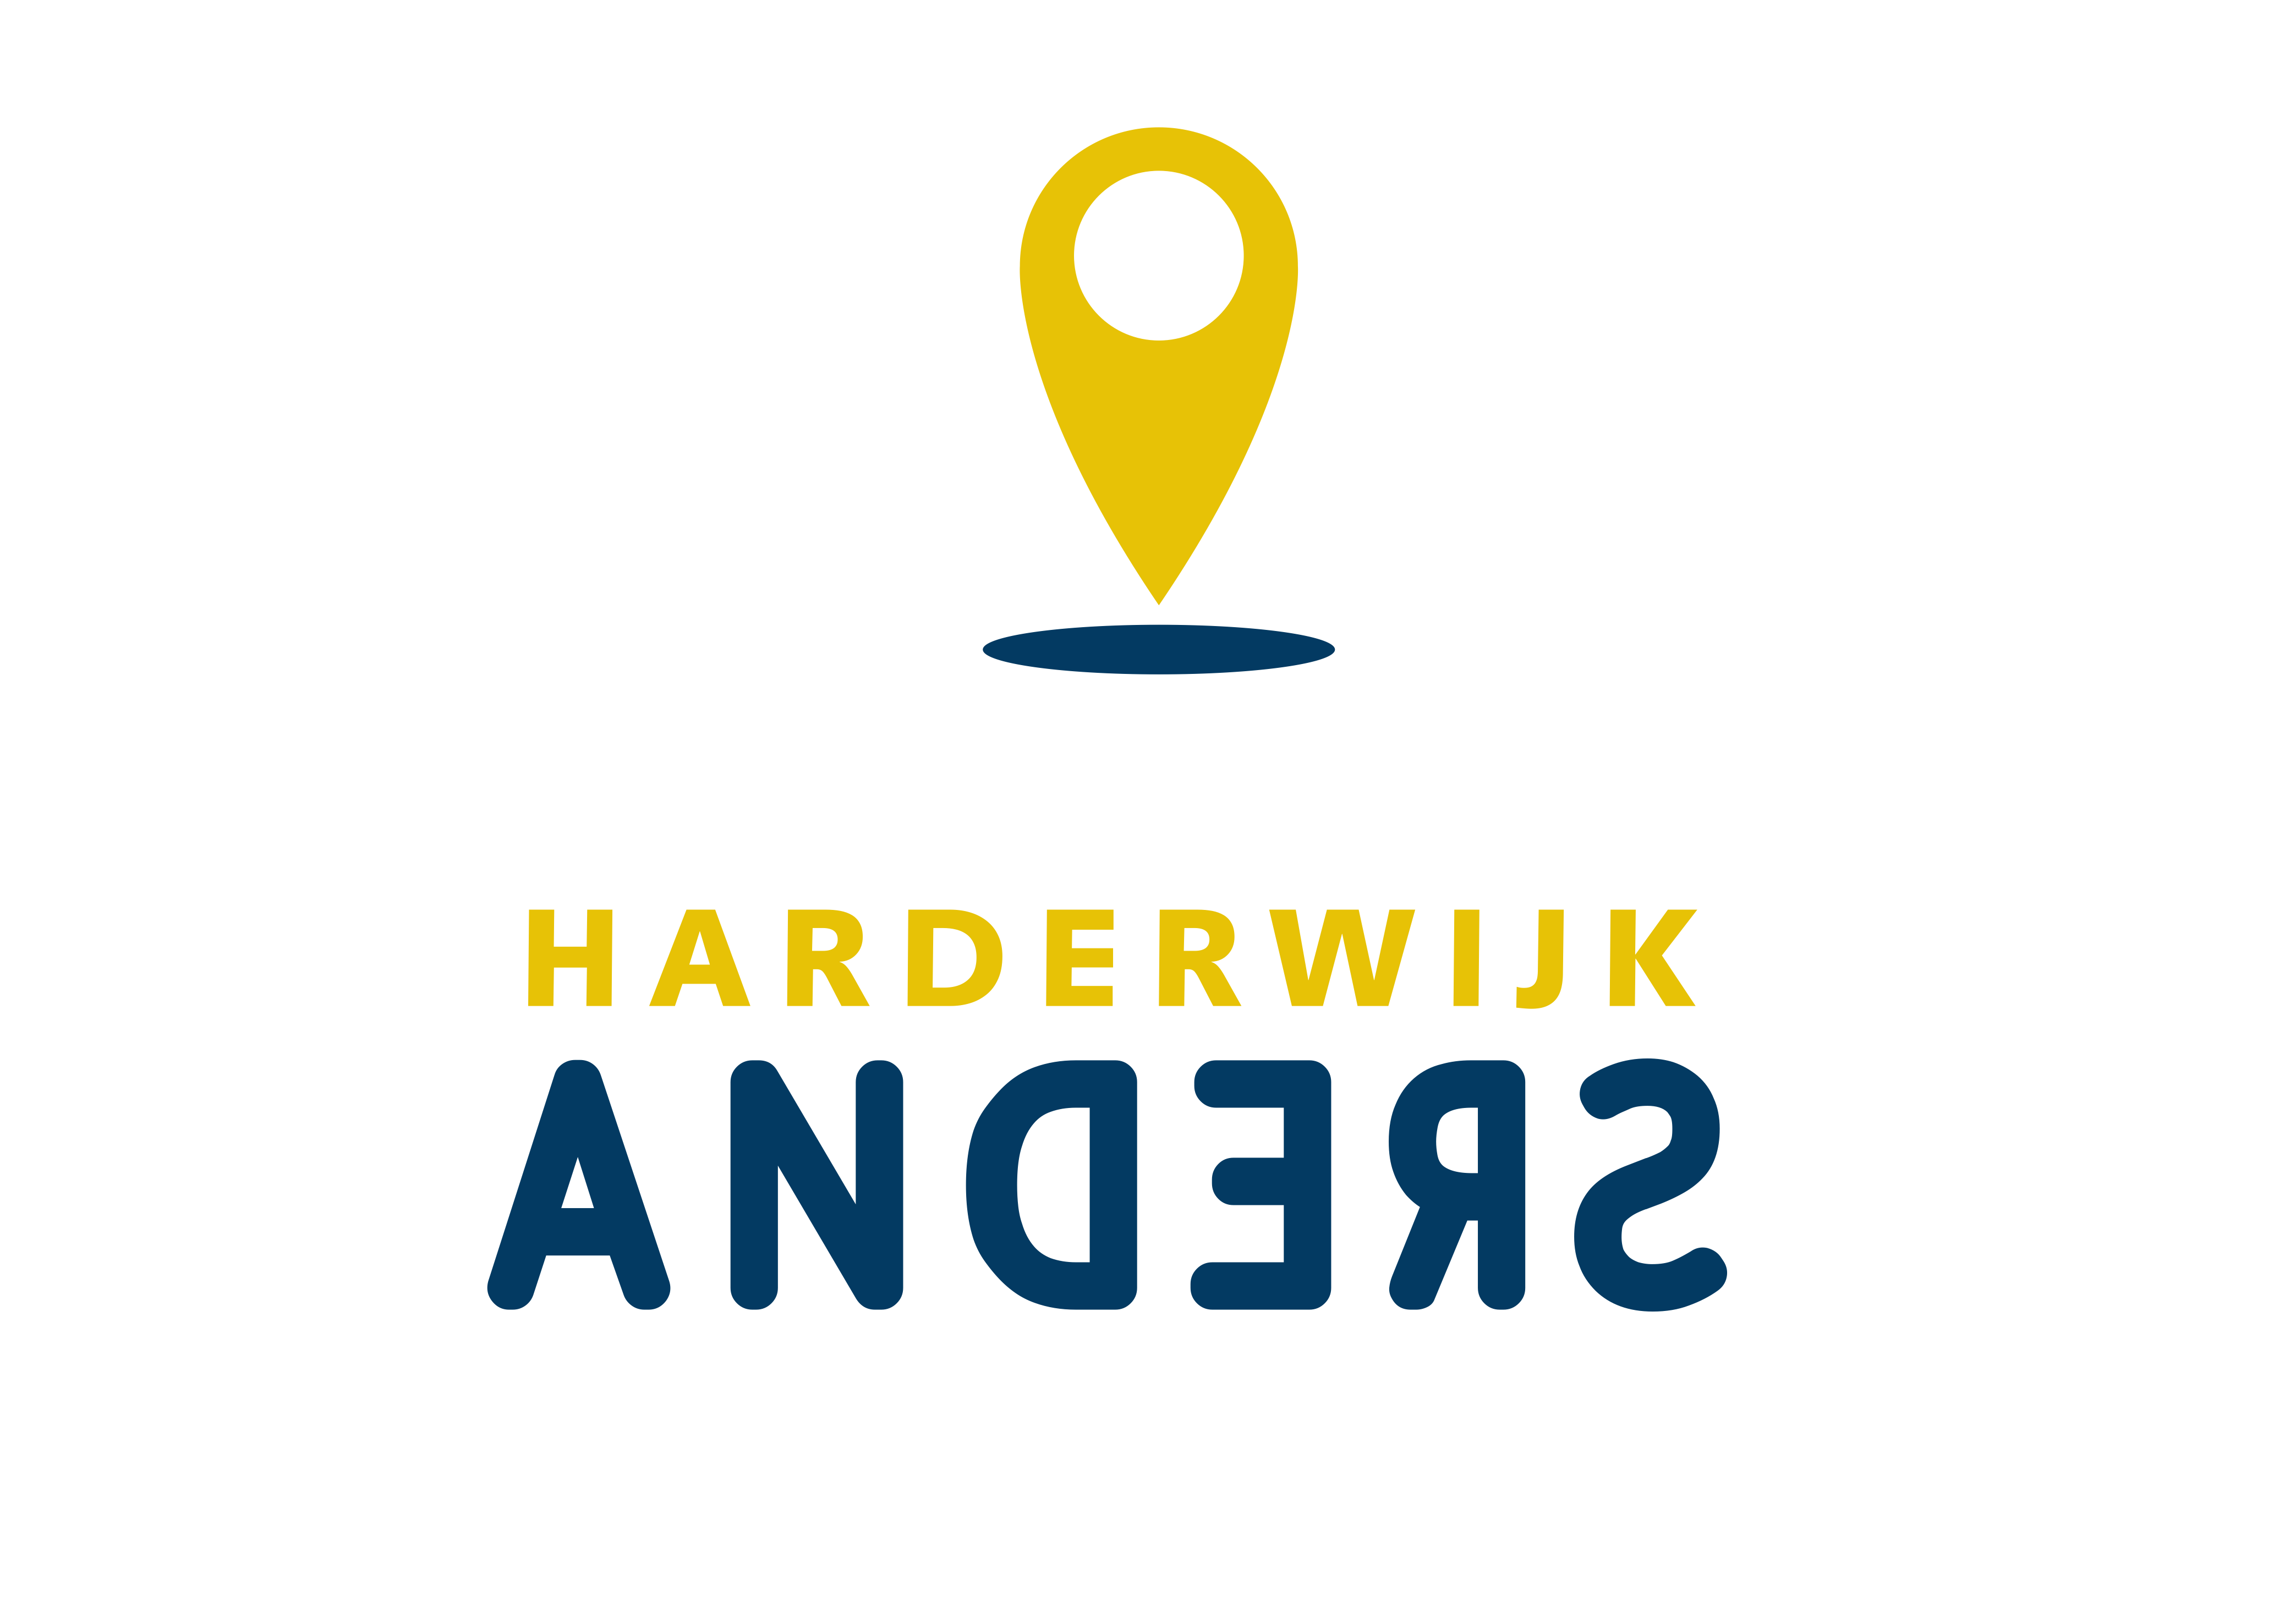 Harderwijk Anders